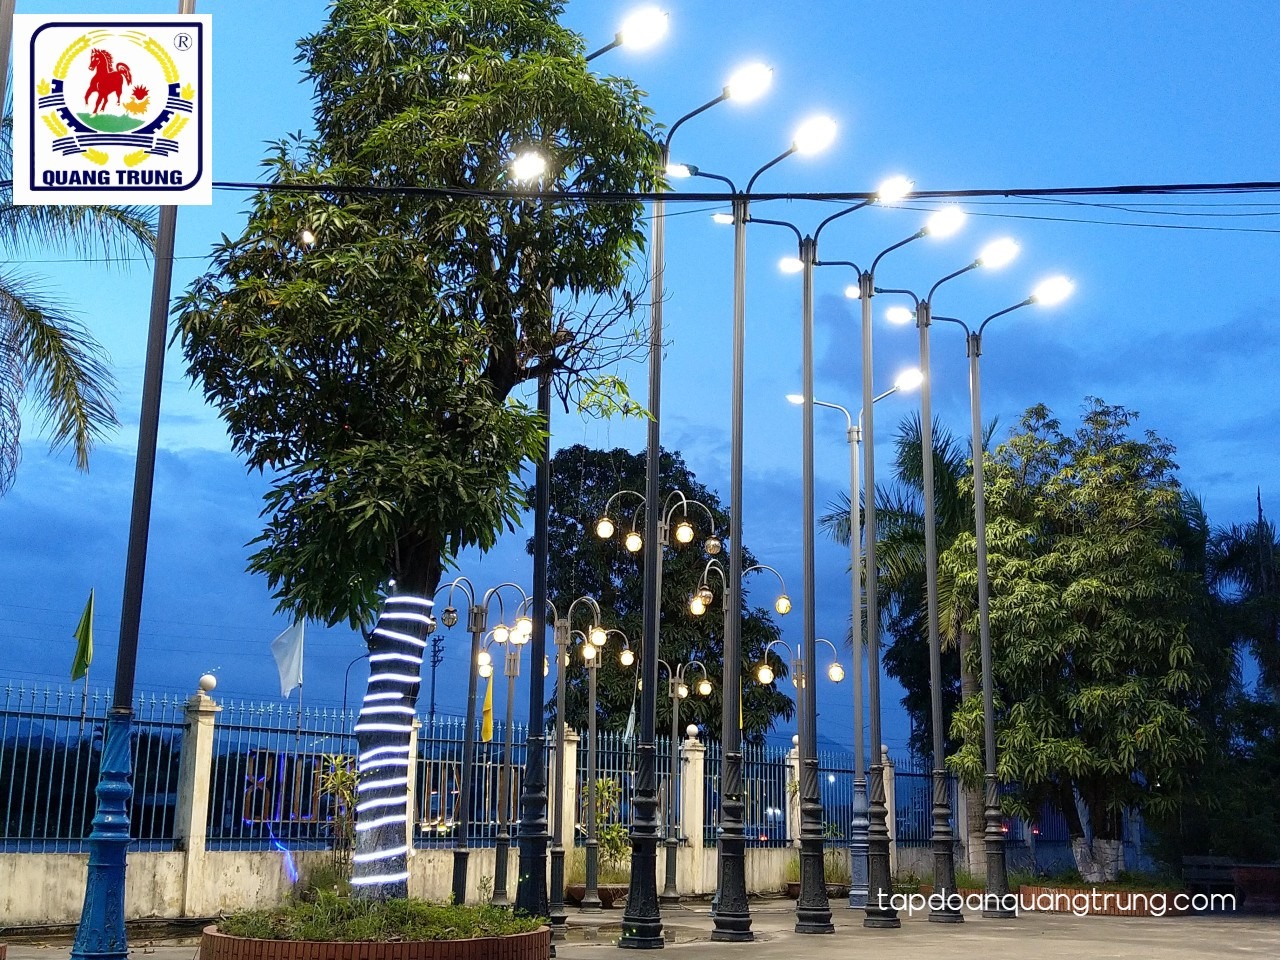 Bán đèn led siêu tiết kiệm điện, tuổi thọ trên 20 năm – Quang Trung